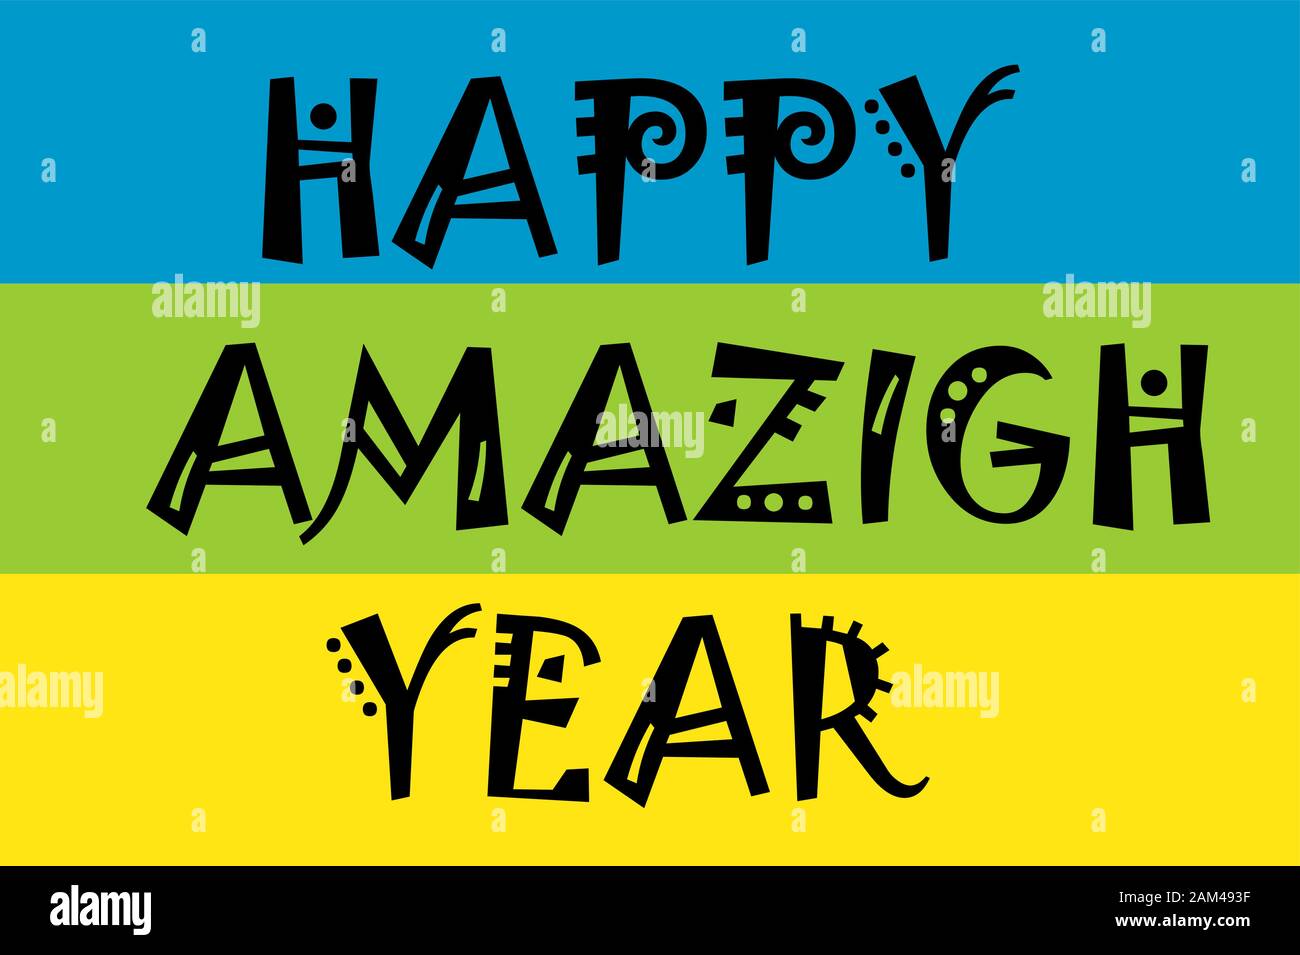 illustrazione vettoriale del nuovo anno, felice anno berbero nuovo, illustrazione di saluto per il nuovo anno. Illustrazione Vettoriale